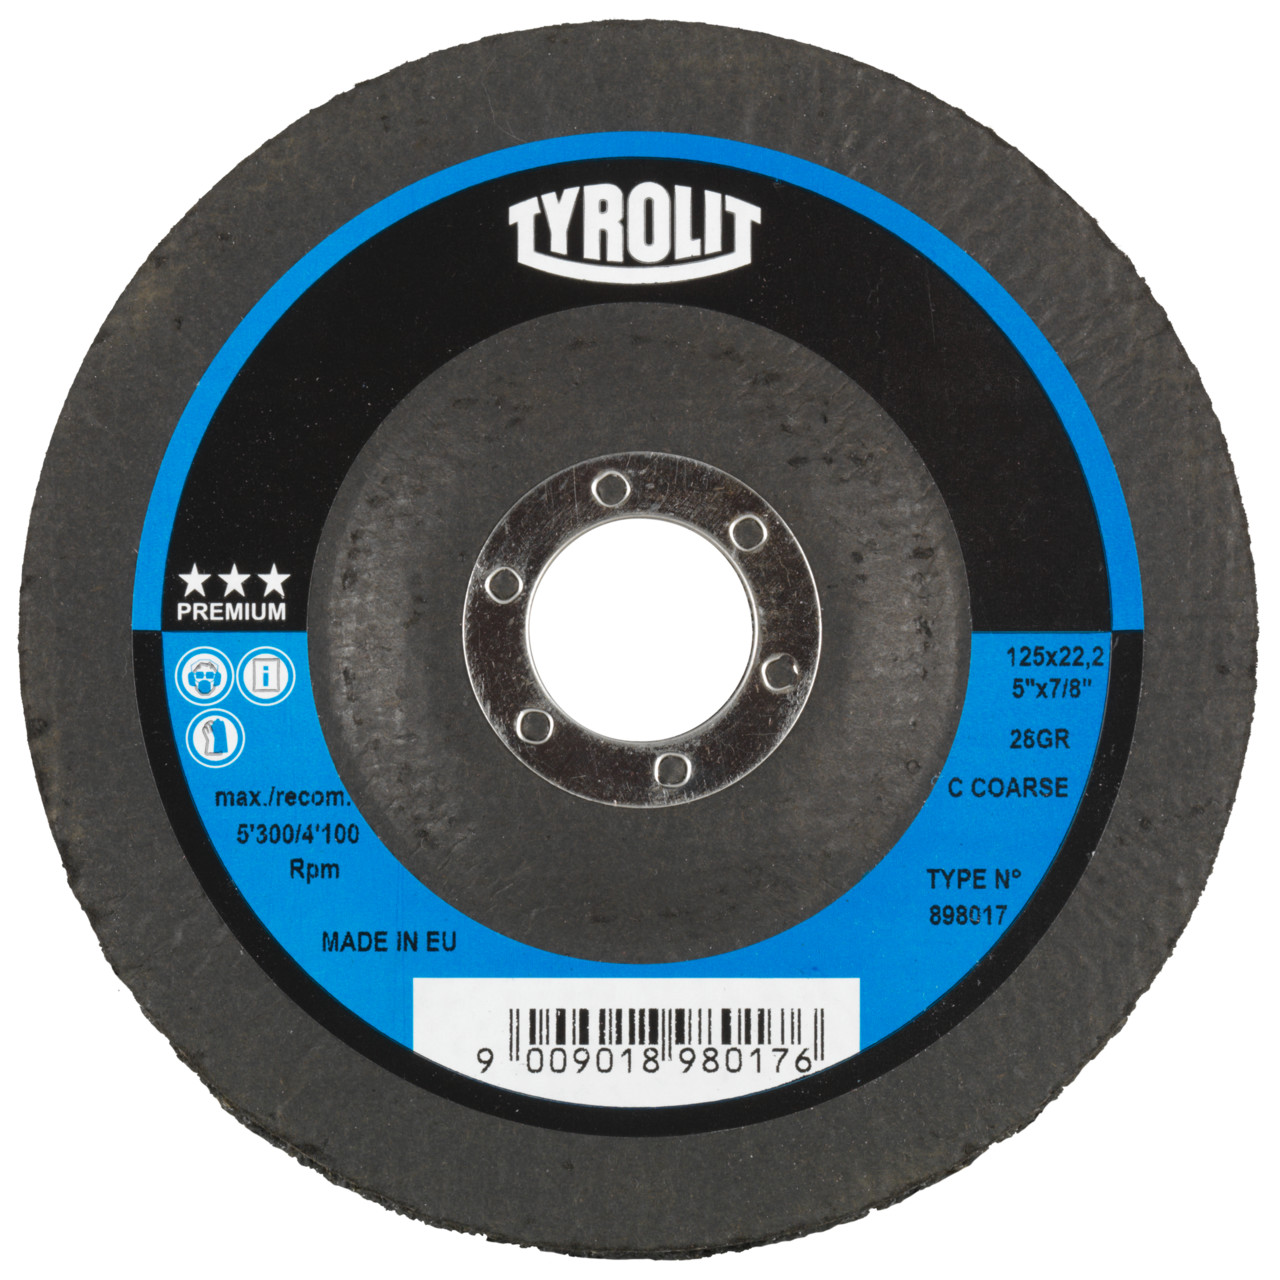 Disco per pulizia grossolana Tyrolit DxH 115x22.2 Applicabile universalmente, C GROB, forma: 28- (disco per pulizia grossolana), Art. 898014